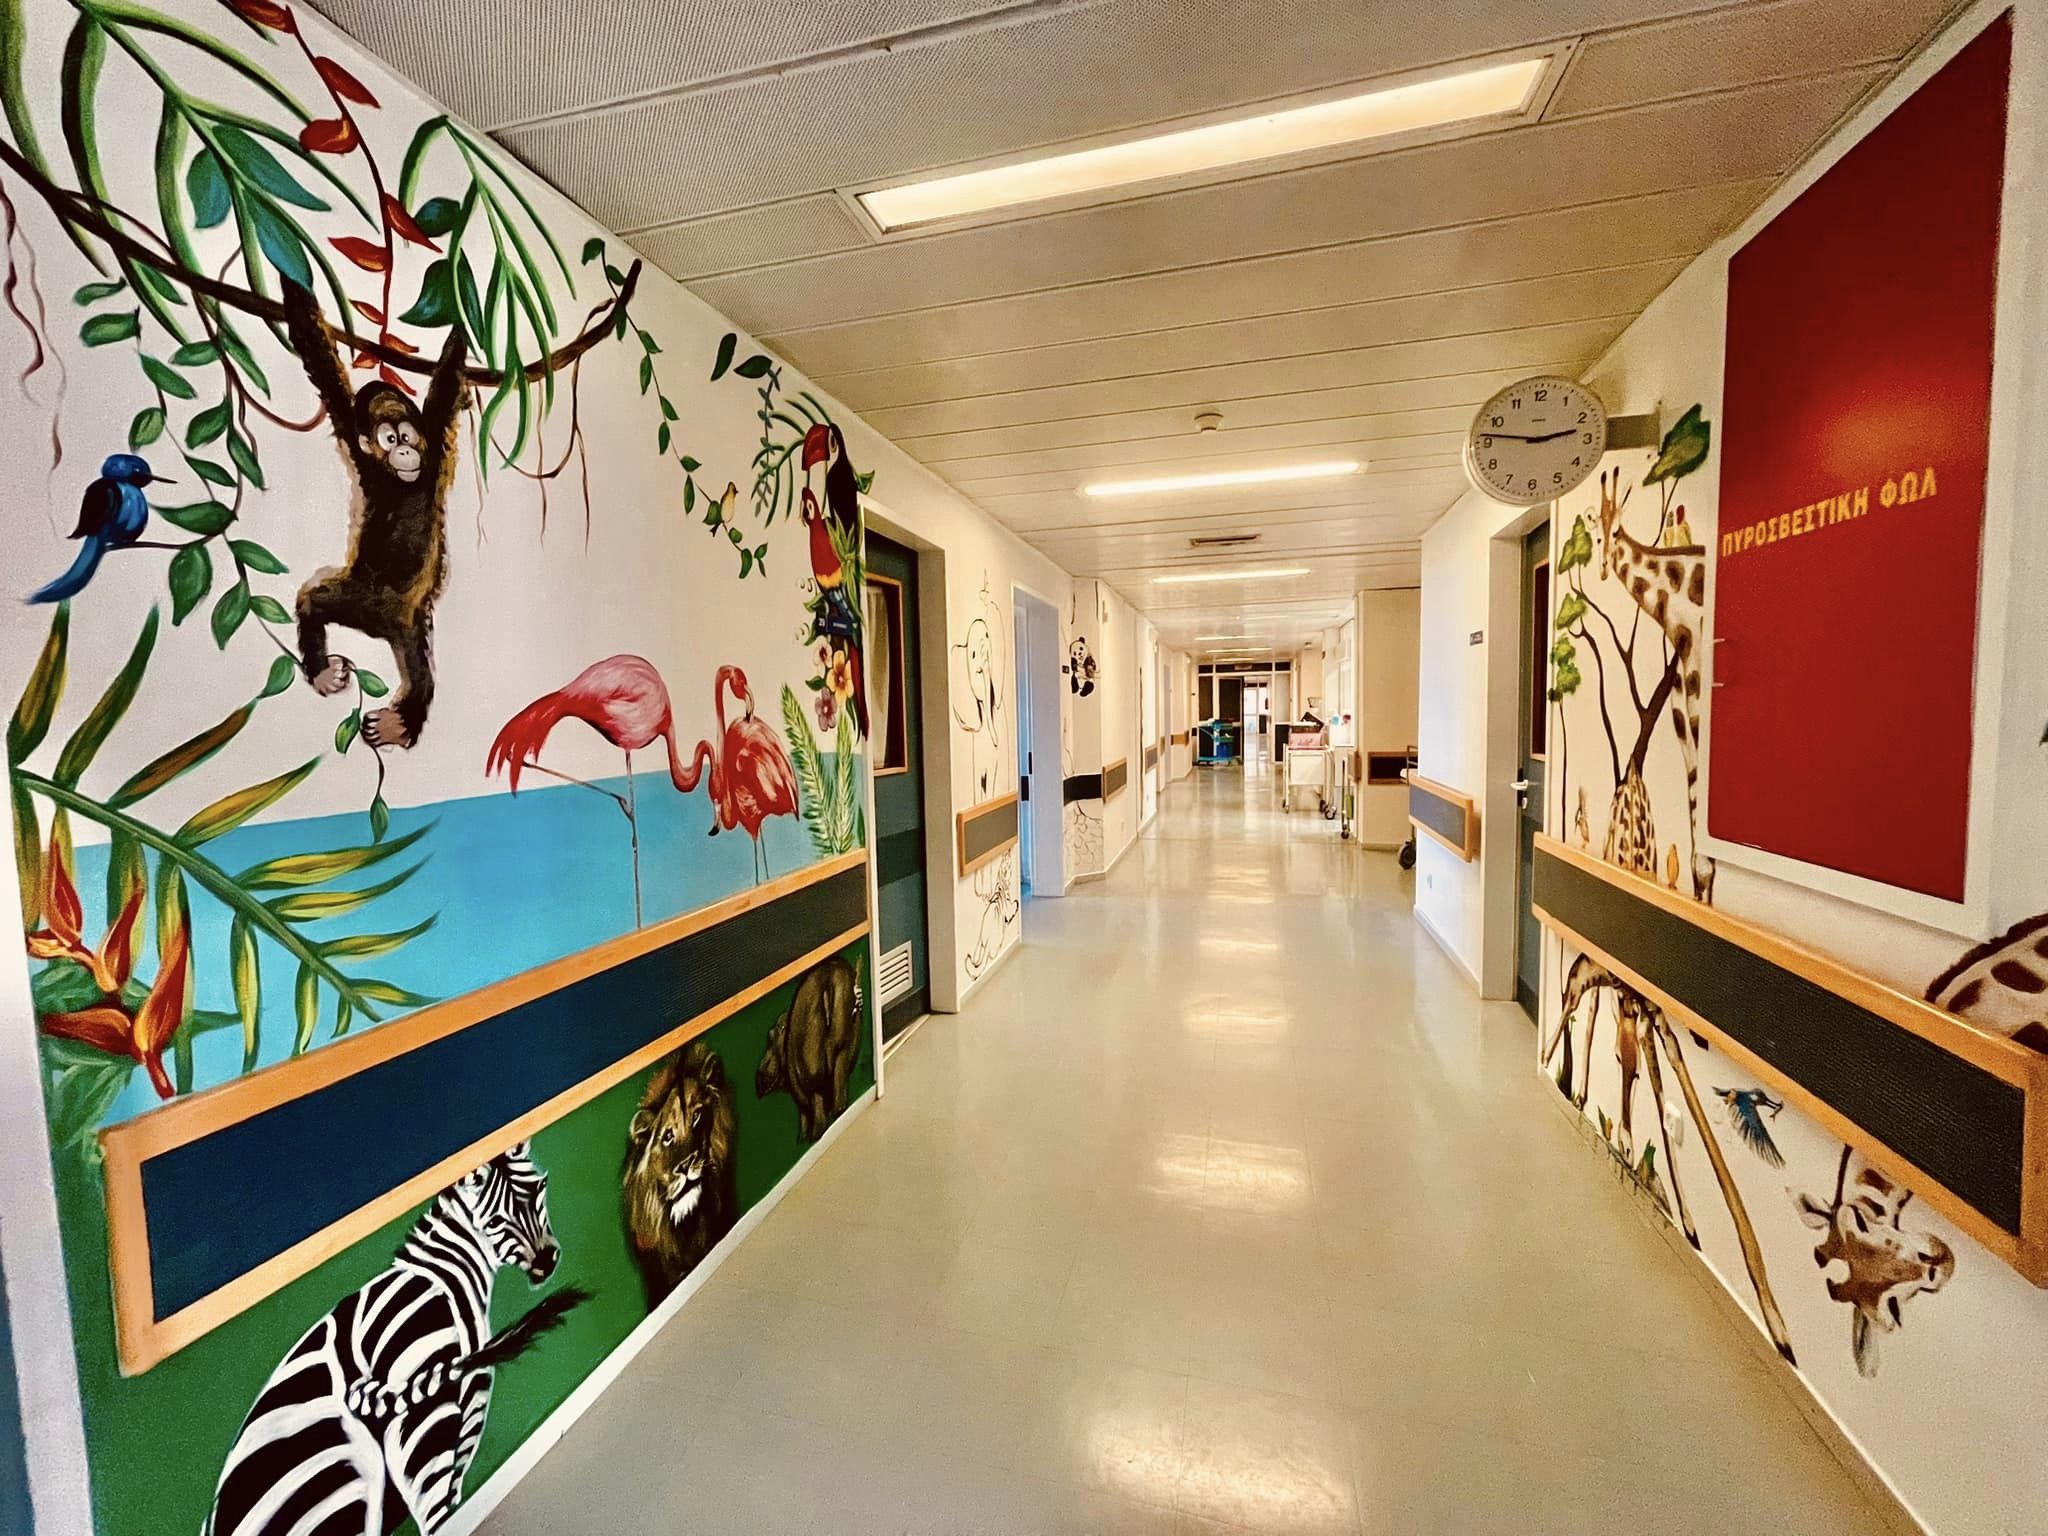 Η ζωγραφική μεταμόρφωσε την παιδιατρική κλινική του γενικού νοσοκομείου Ξάνθης
